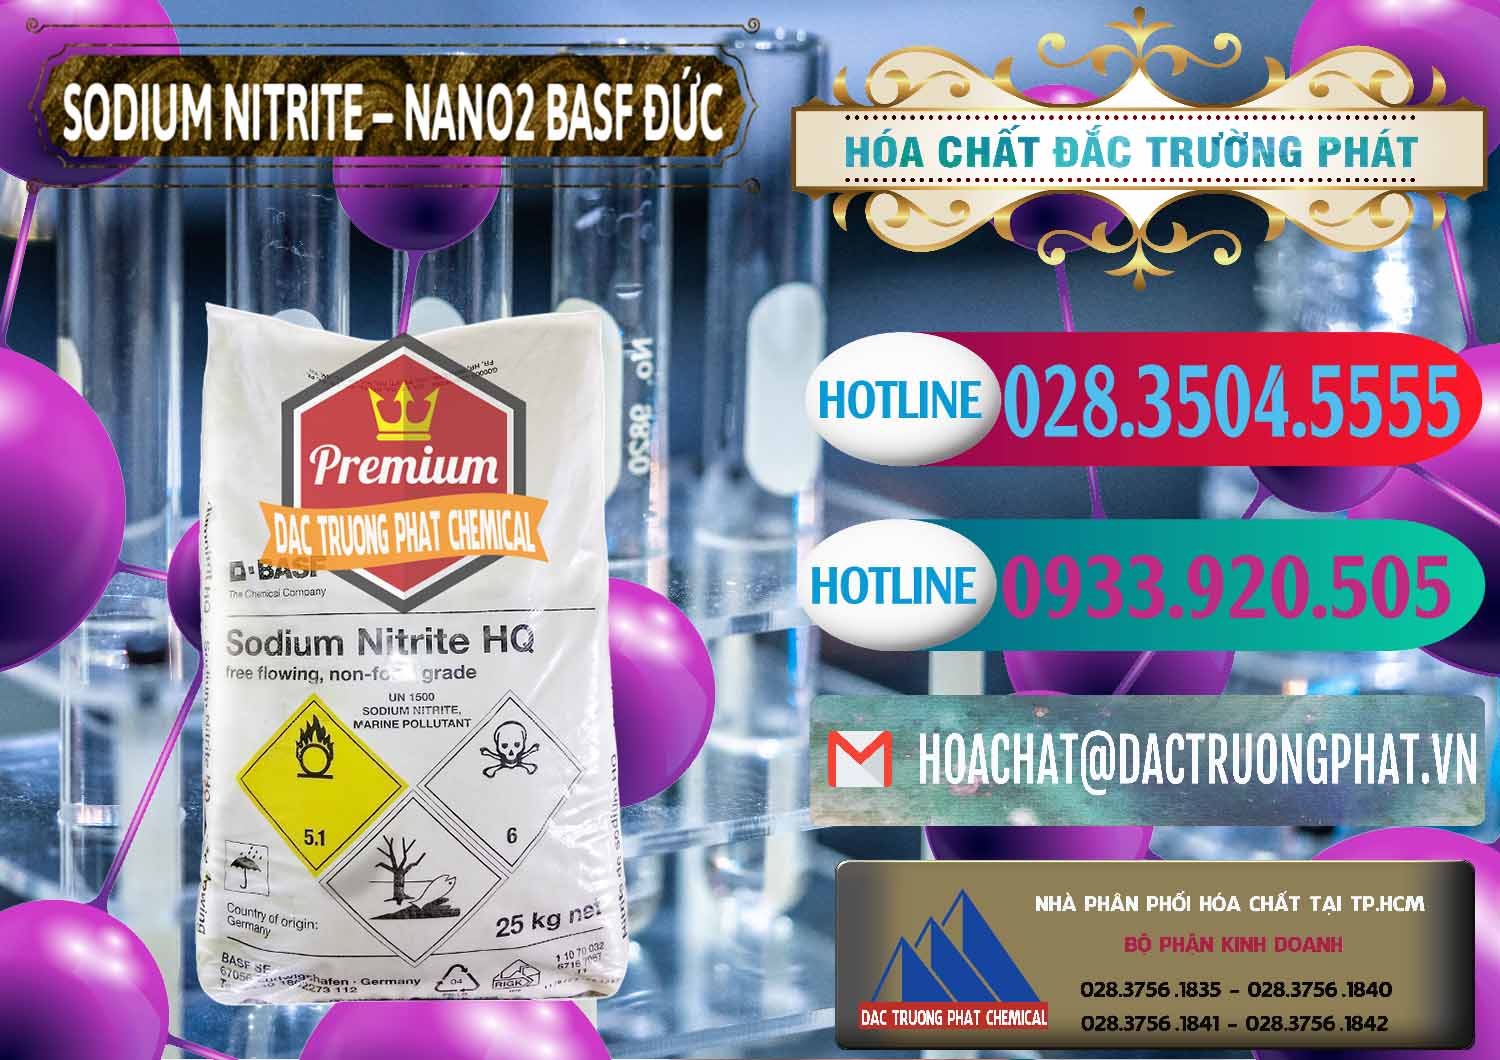 Công ty chuyên phân phối ( bán ) Sodium Nitrite - NANO2 Đức BASF Germany - 0148 - Cty chuyên bán _ phân phối hóa chất tại TP.HCM - truongphat.vn